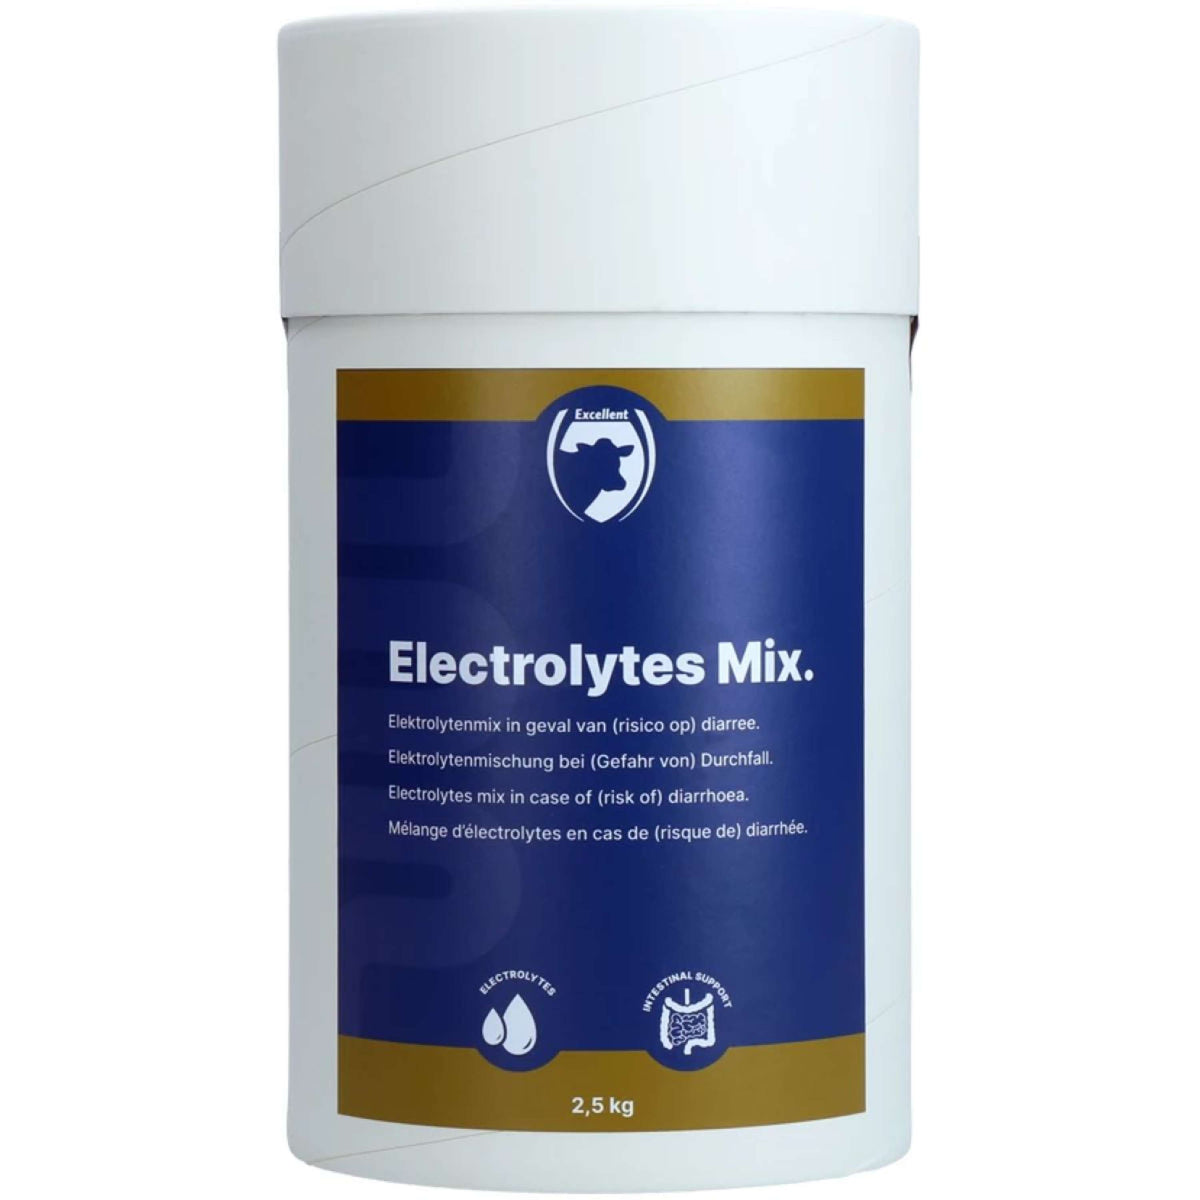 Excellent Elektrolyte-mix